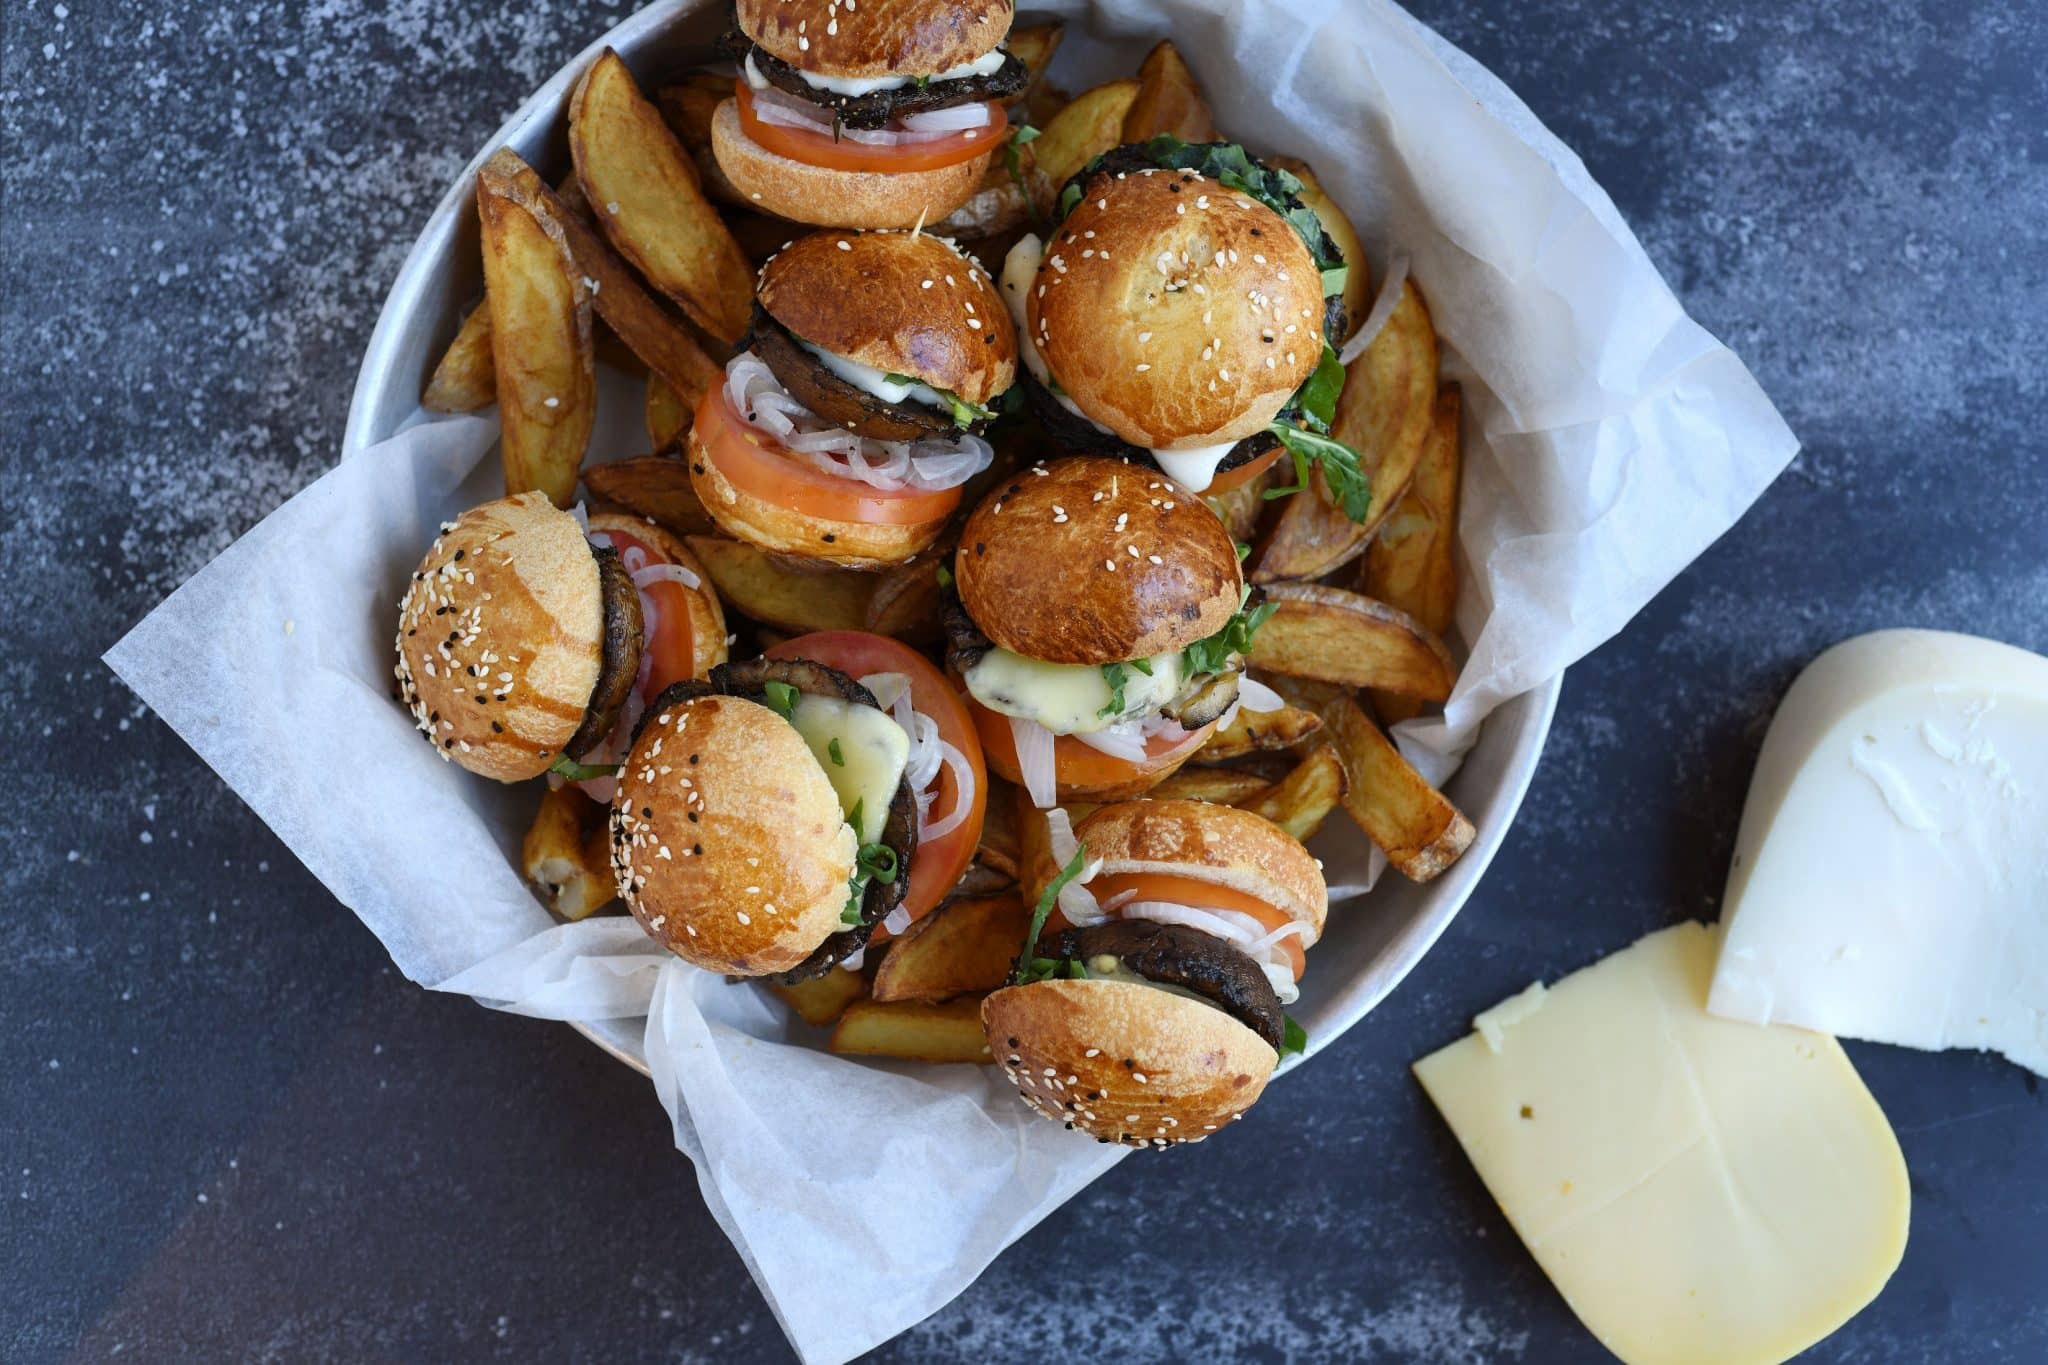 מוציאים את הפטריות והגבינה ובונים את ההמבורגר – בצל, עגבנייה, פטריות עם גבינה ומלפפון כבוש